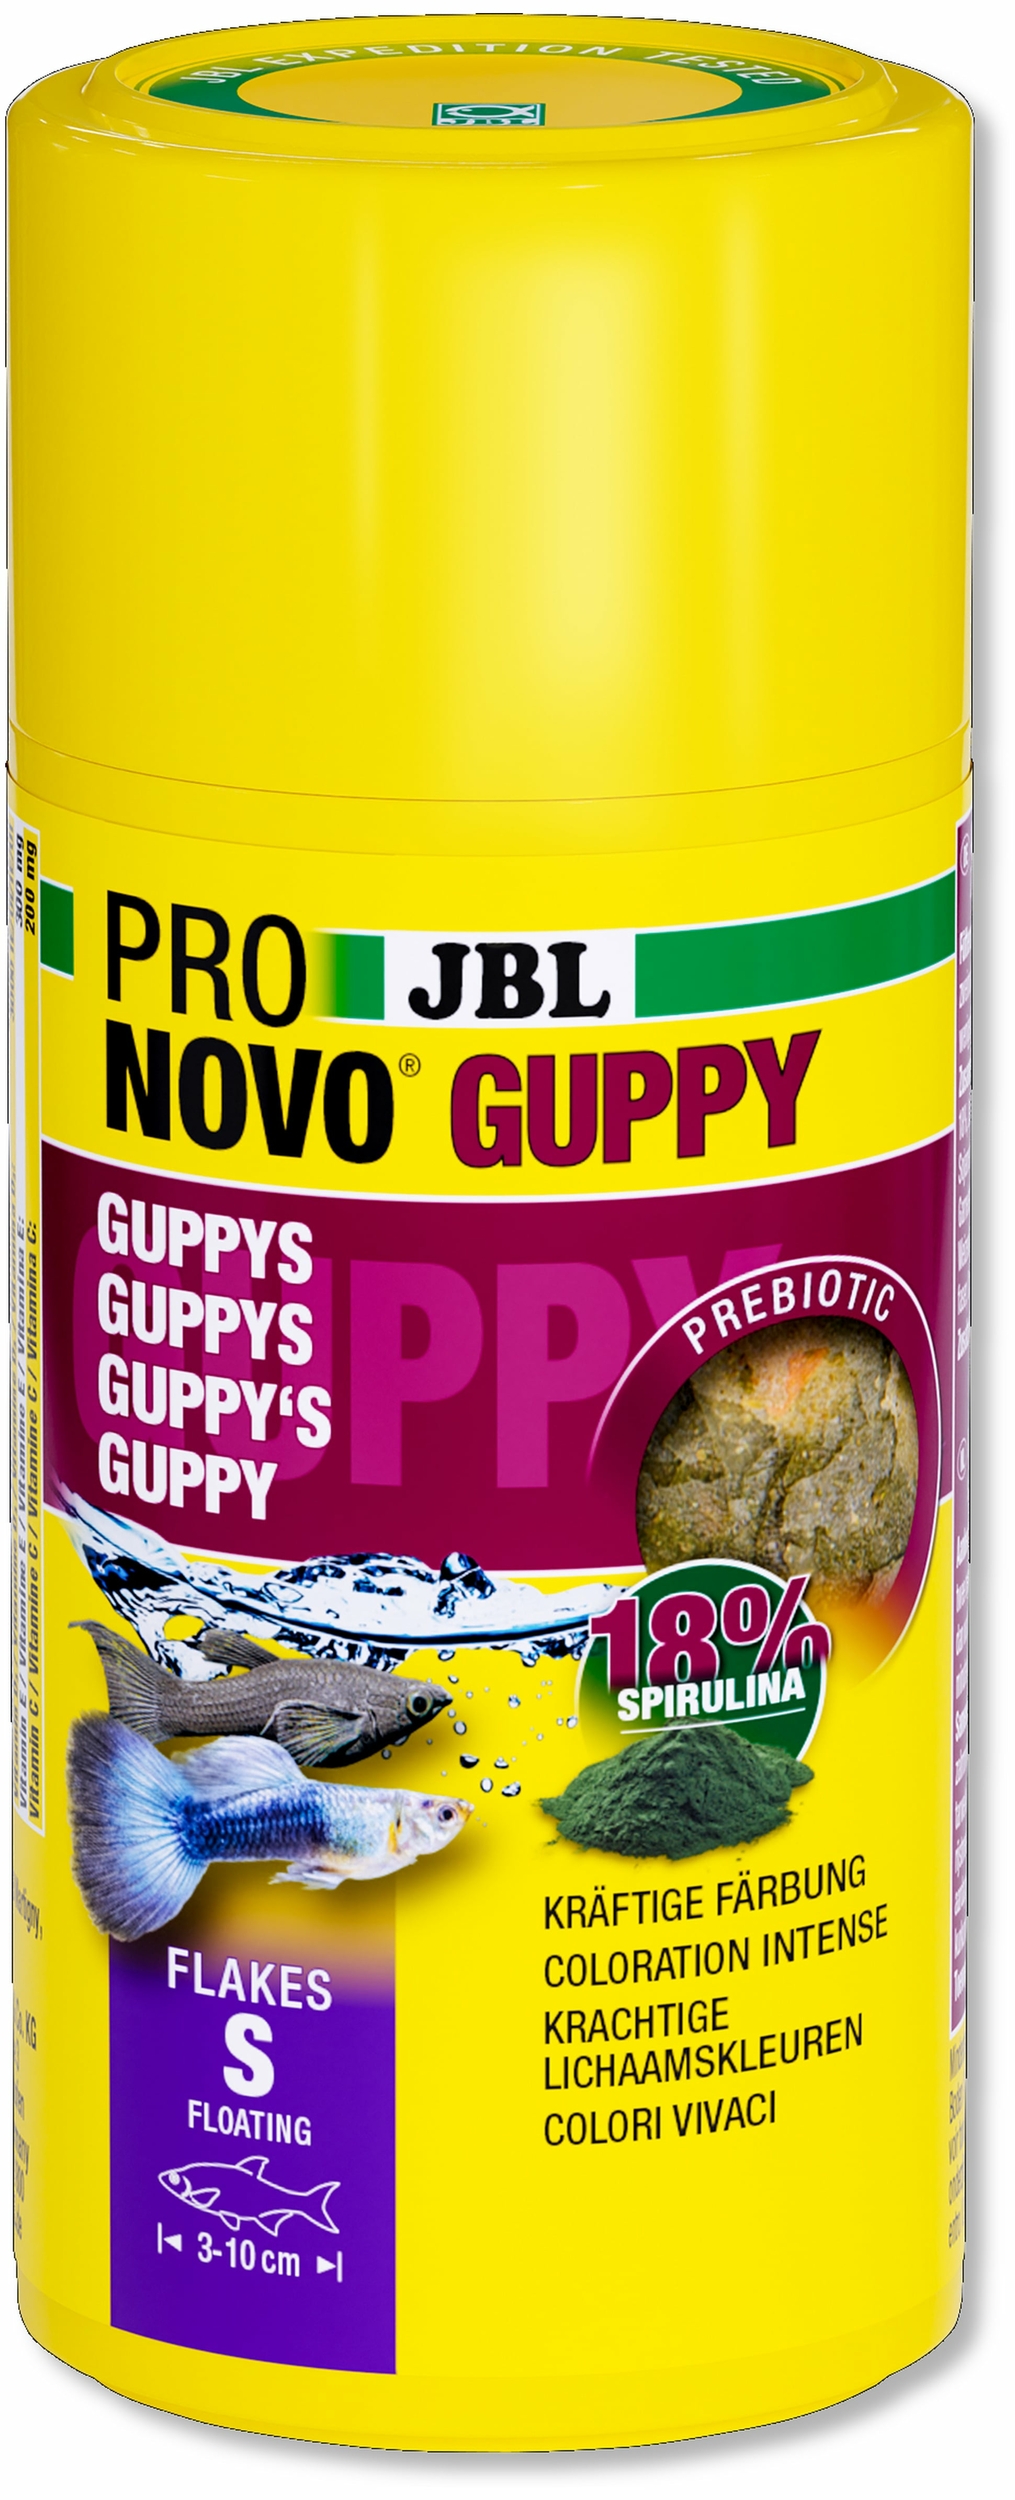 jbl-pronovo-guppy-flakes-s-100-ml-nourriture-de-base-en-flocons-pour-guppys-et-autres-poissons-ovovivipares-de-3-a-10-cm-min